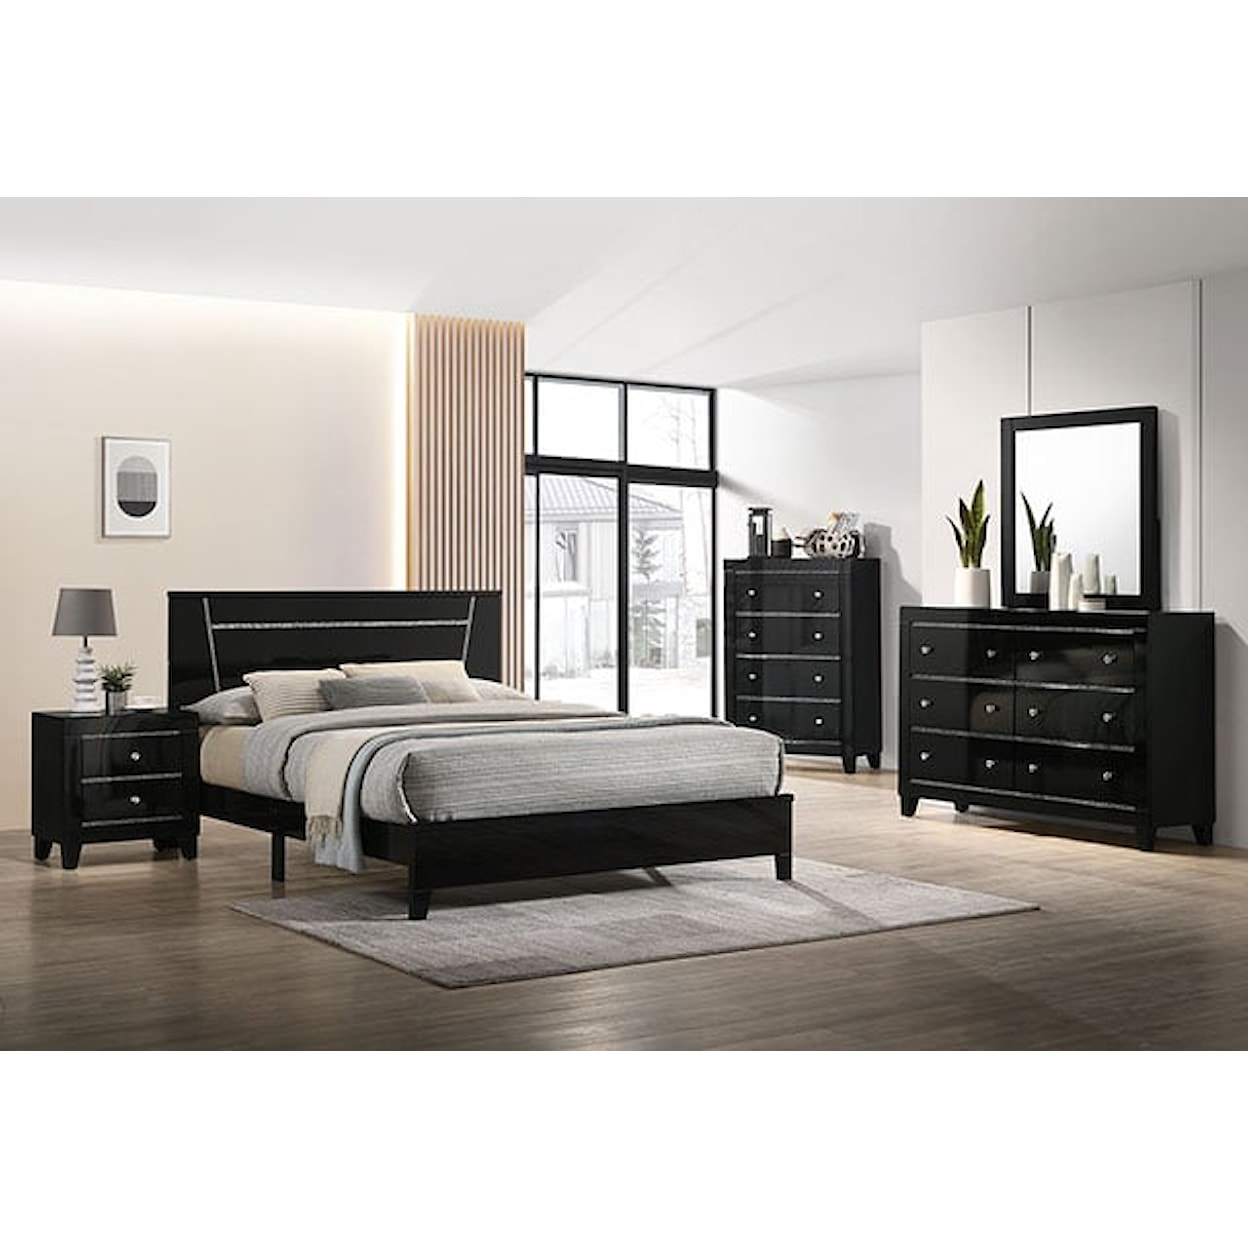 Furniture of America Magdeburg Black 6-Drawer Bedroom Dresser